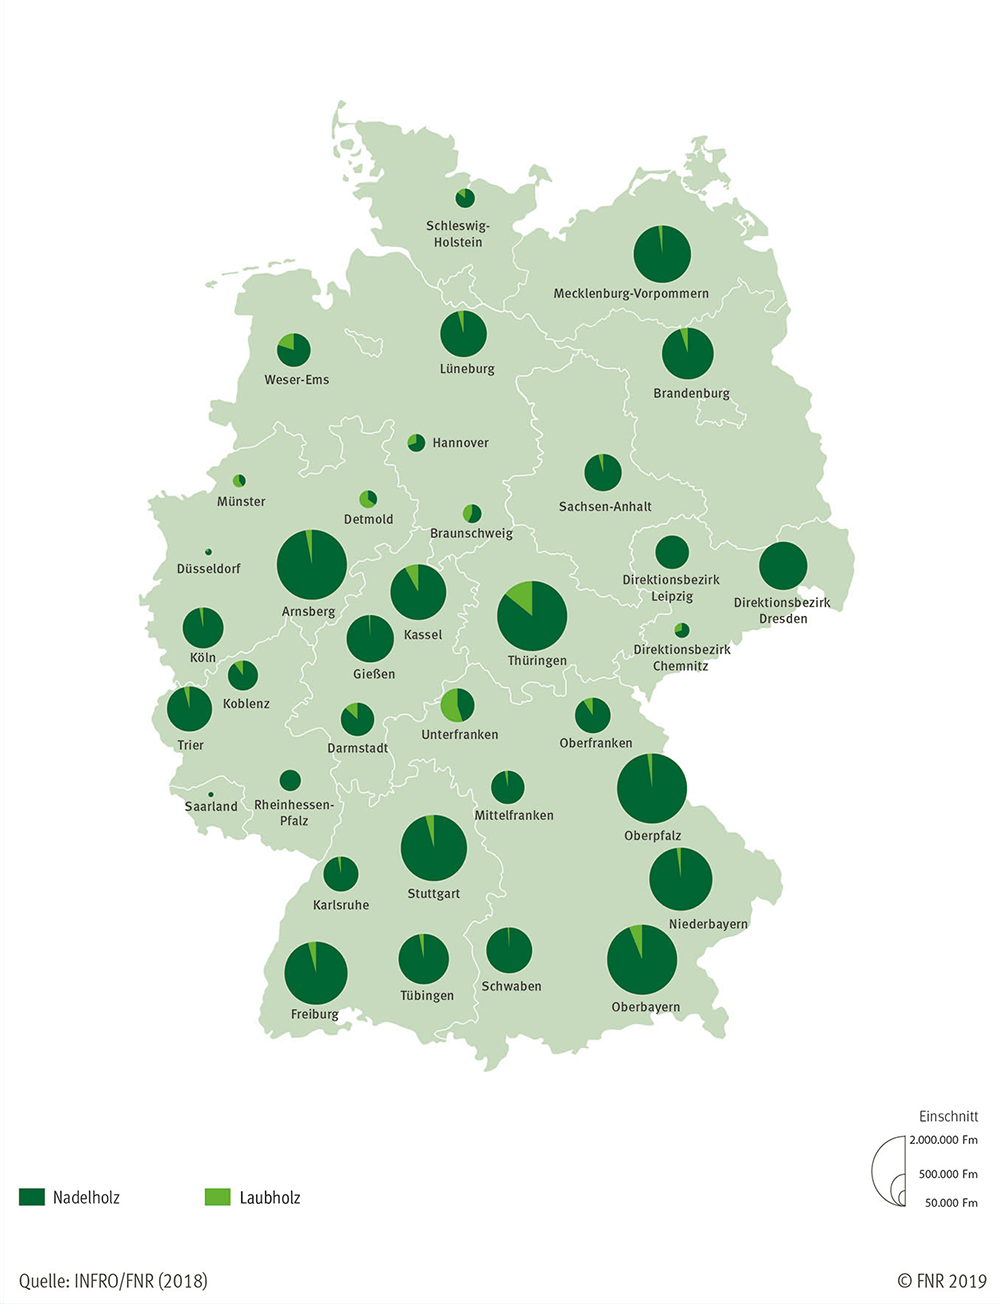 Einschnittvolumen nach Holzgrundarten und Regierungsbezirken 2015